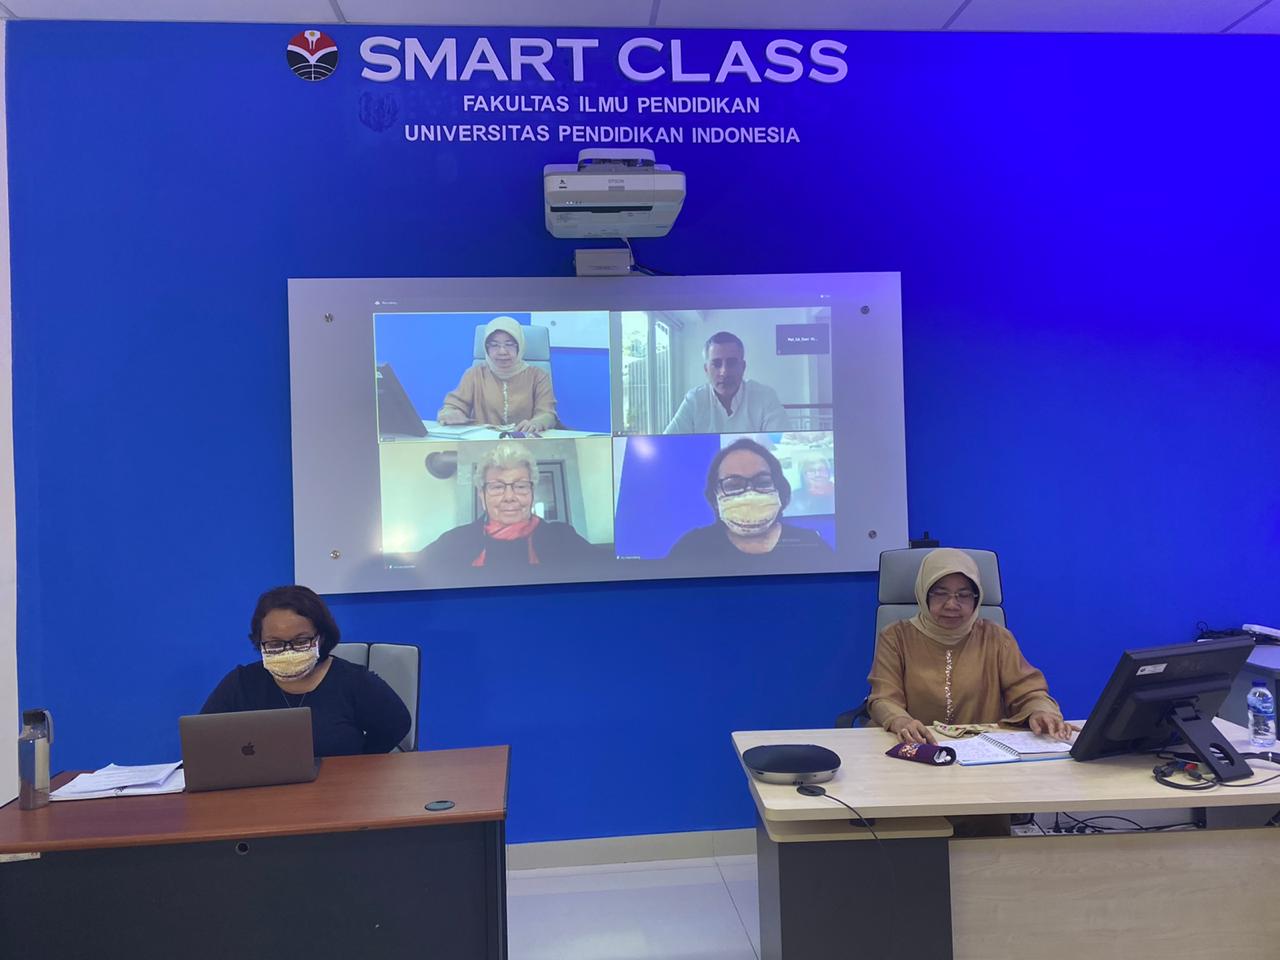 Smart Class